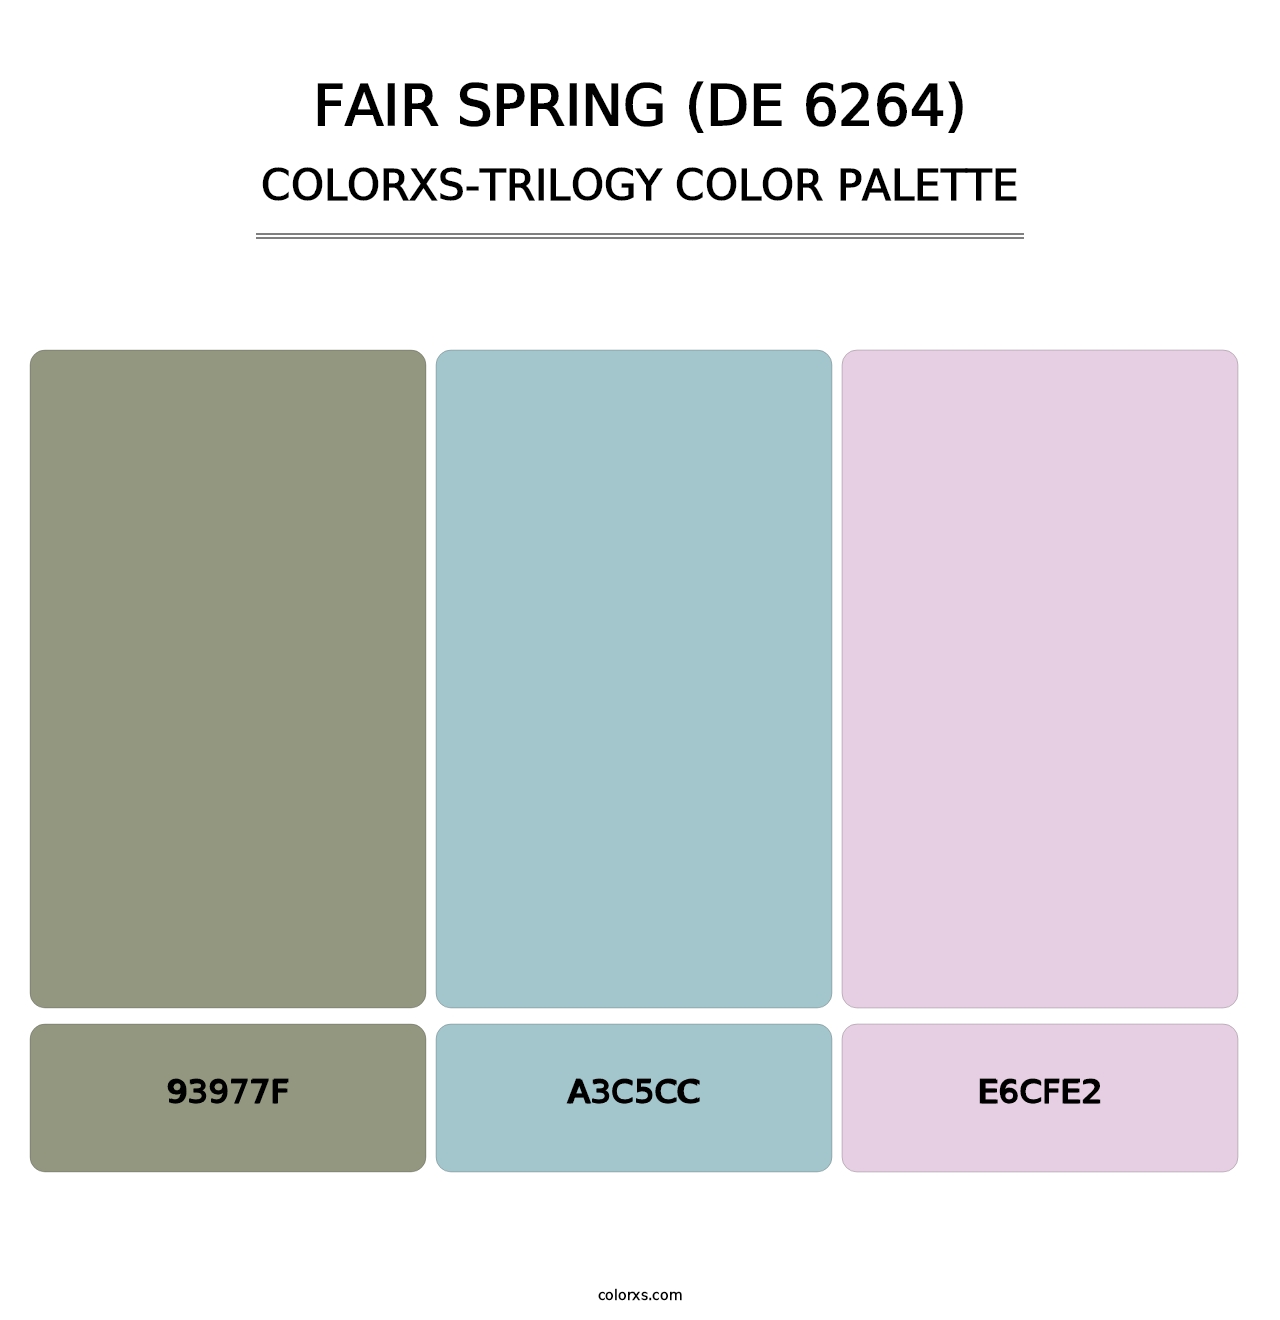 Fair Spring (DE 6264) - Colorxs Trilogy Palette